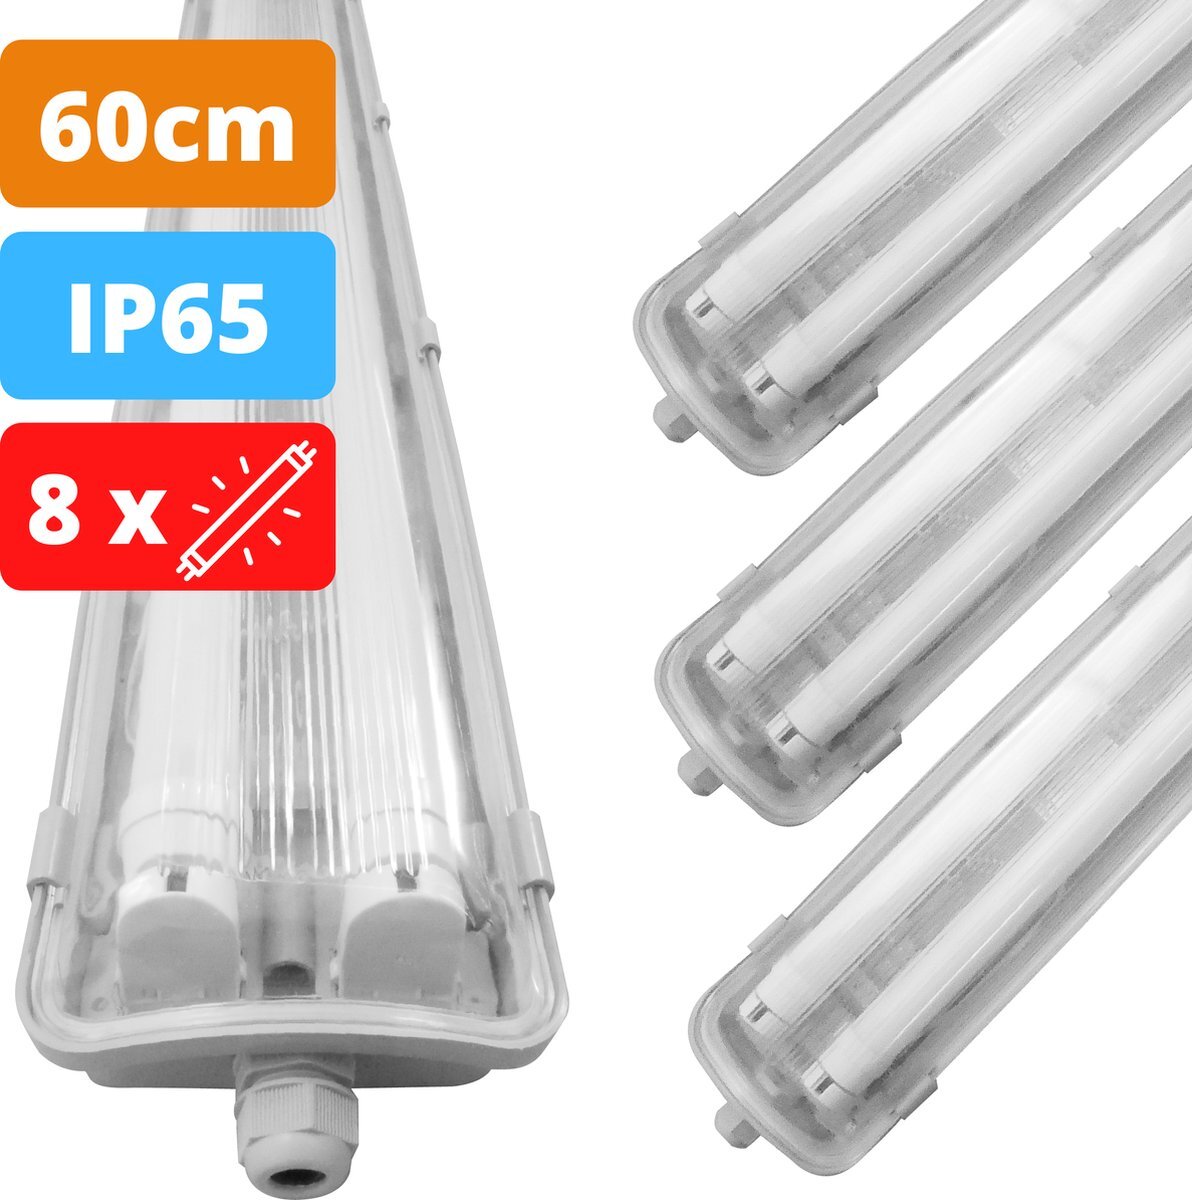 Proventa Proventa® LED TL lampen met armatuur 60cm - IP65 - 4000K - 2160 lumen - 4 stuks